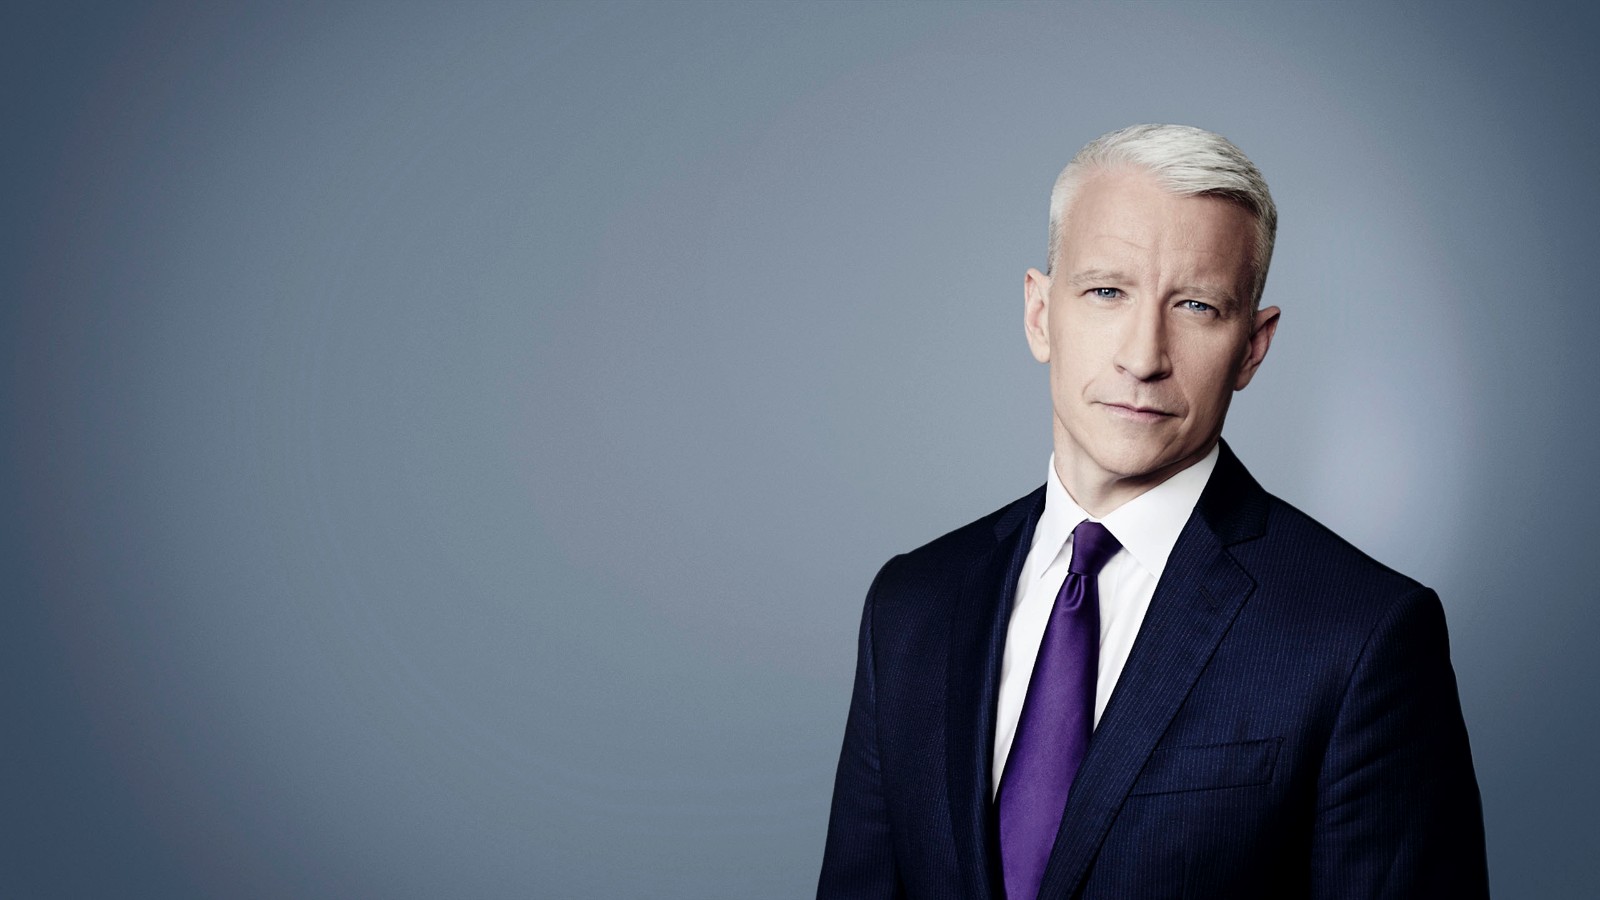 Cnn Profiles Anderson Cooper Cnn Anchor Cnn 